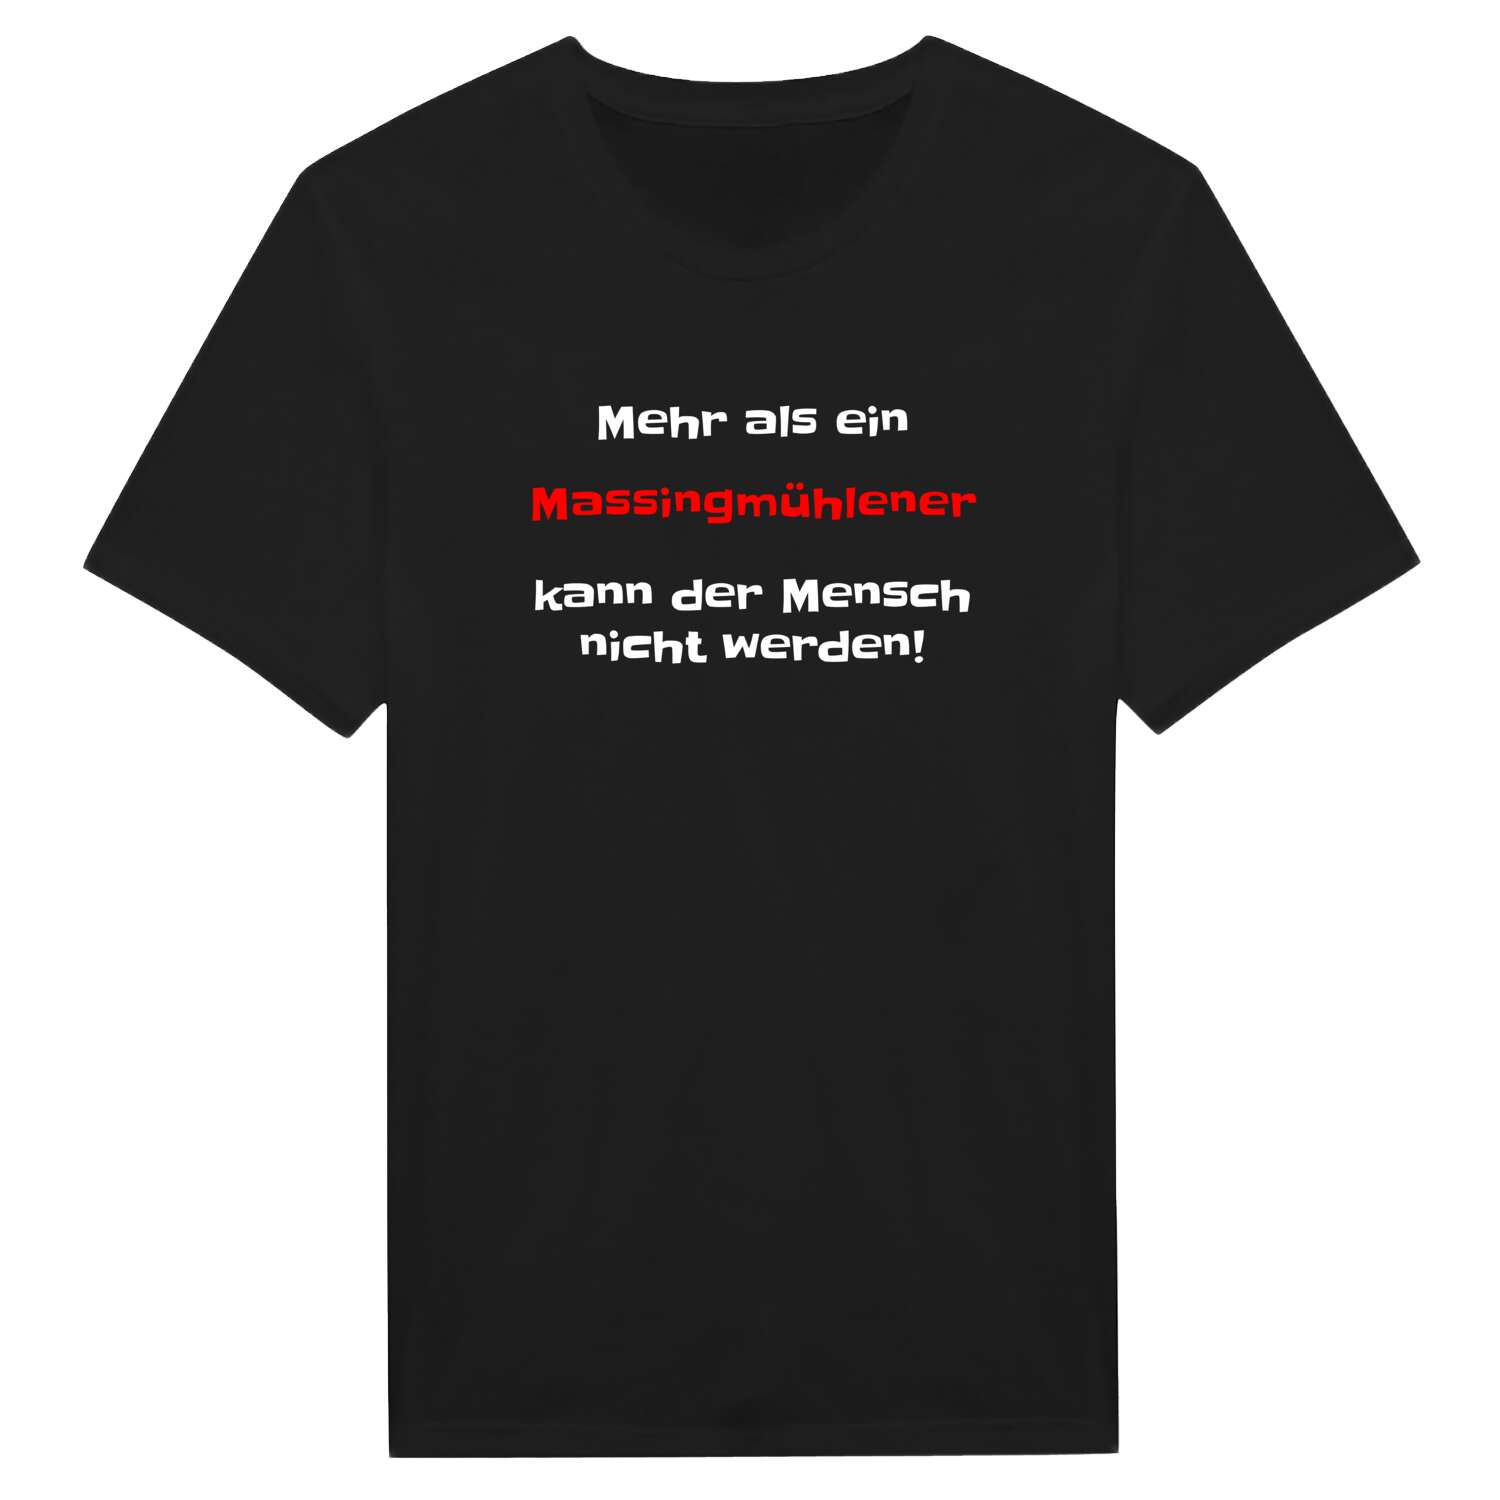 Massingmühle T-Shirt »Mehr als ein«